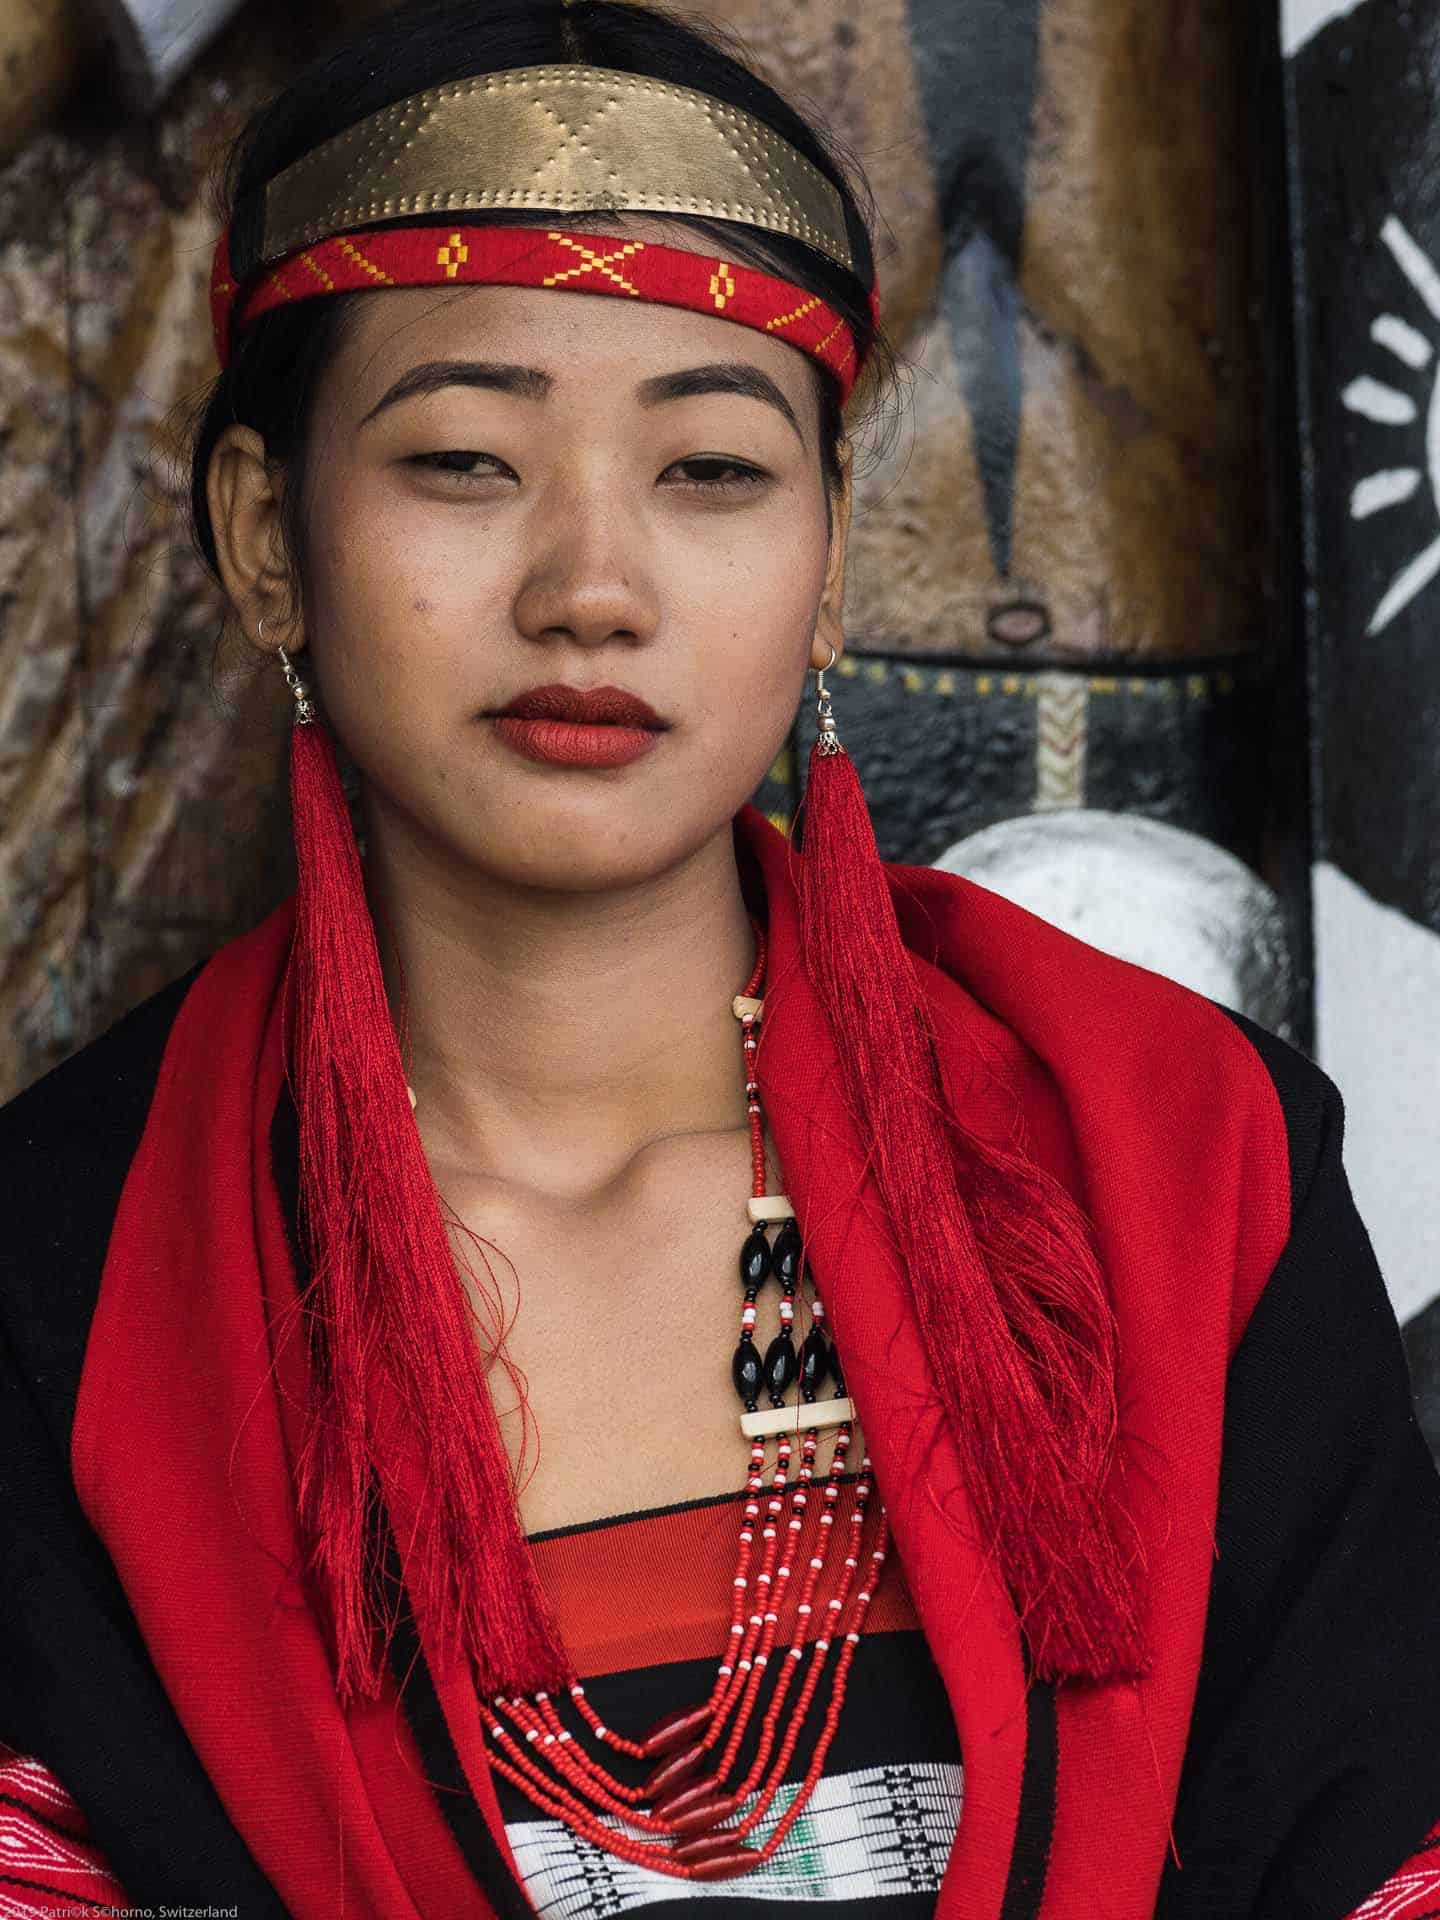 Bamboo Retreat Hotel - image "Nagaland - Reisebericht von Teeplantagen und dem Hornbill Festival - Informationen für die Indien Reise" 79